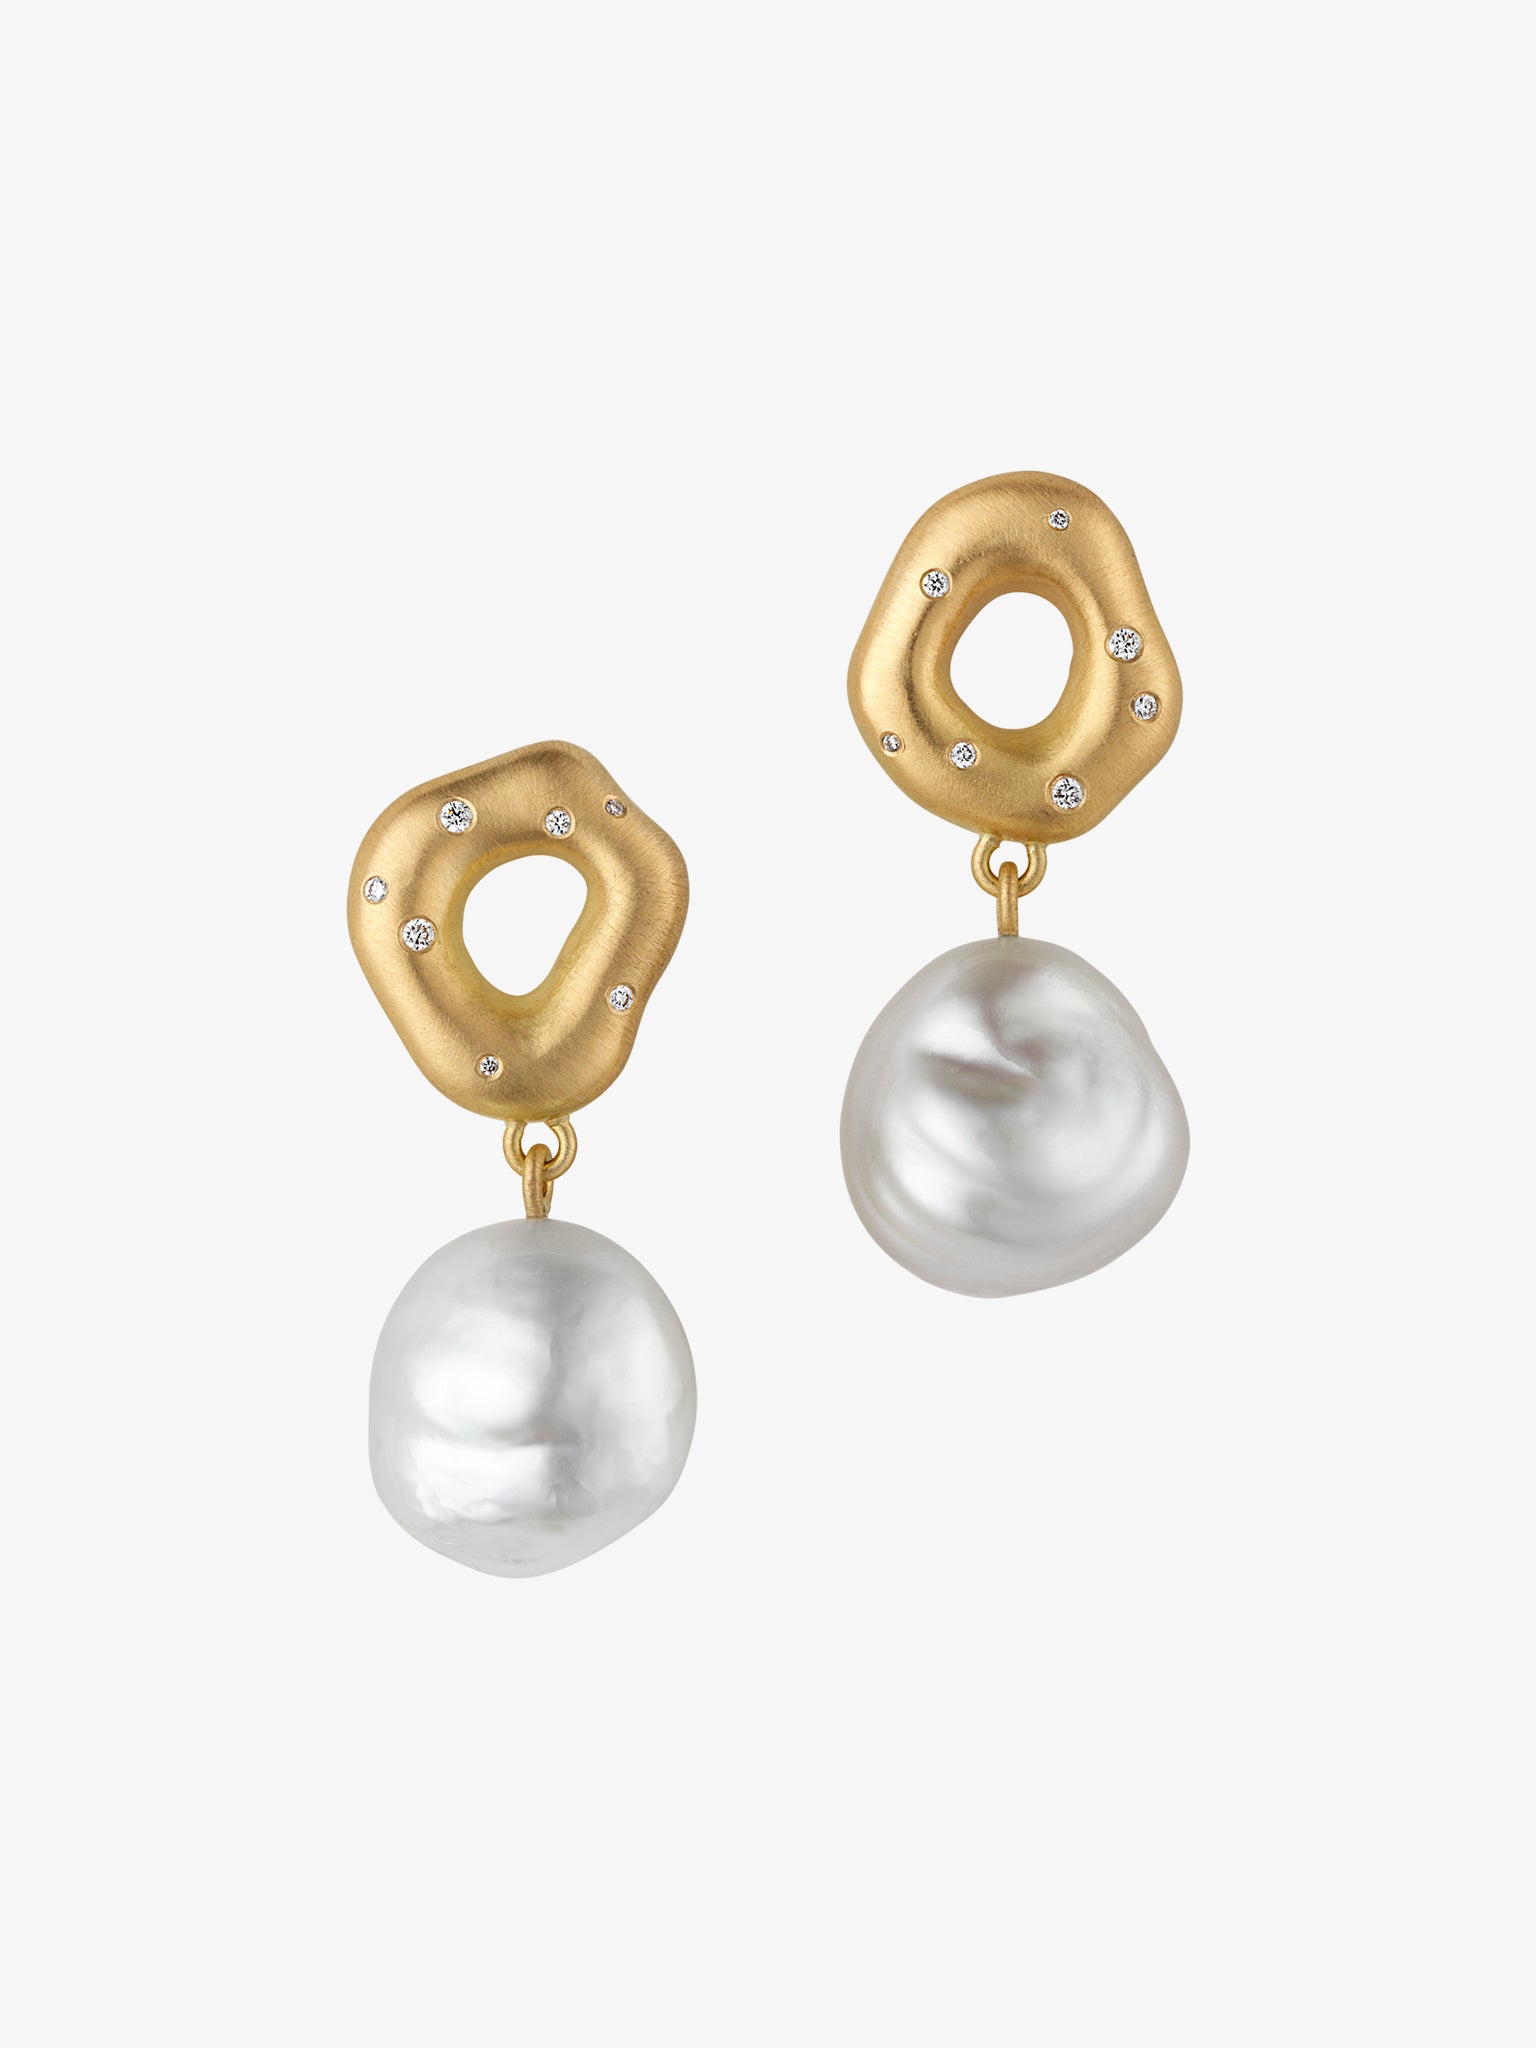 Pearl in orbit earrings